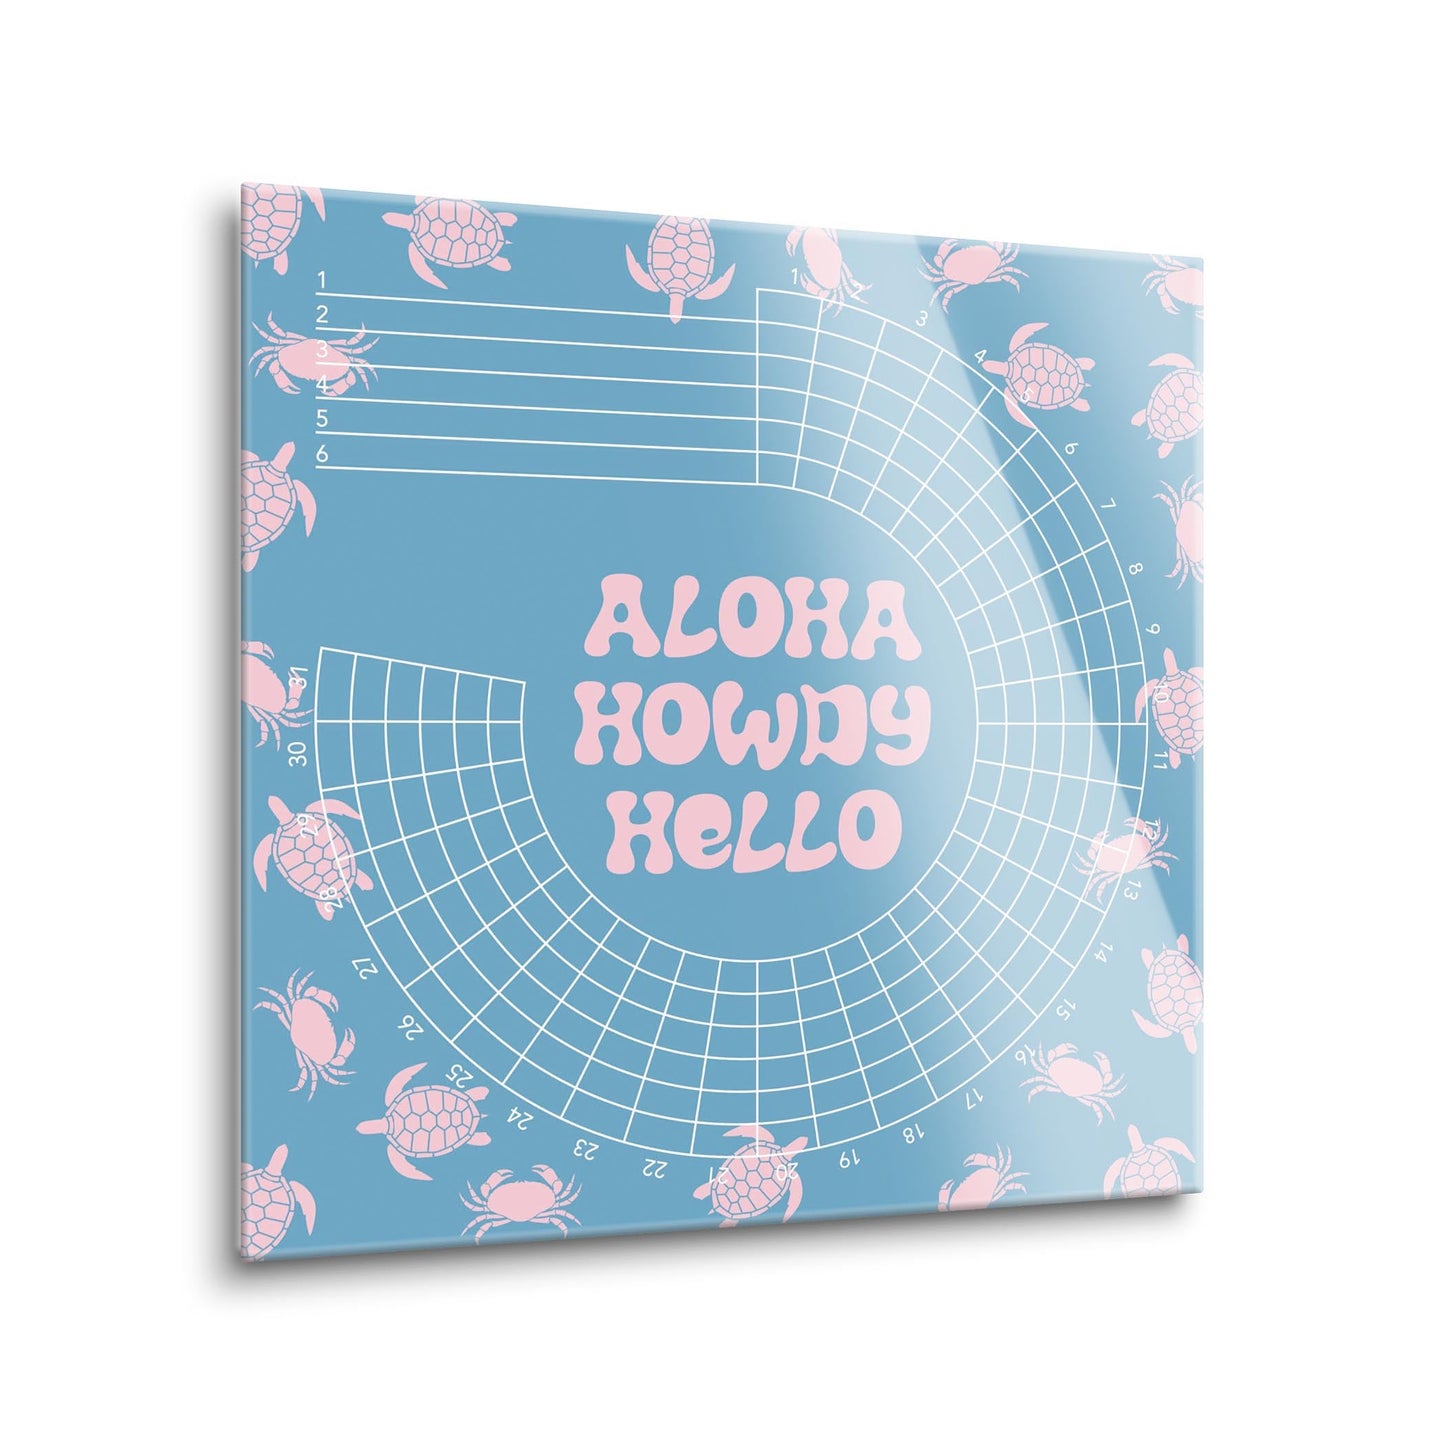 Coastal Aloha Howdy Hello | 12x12